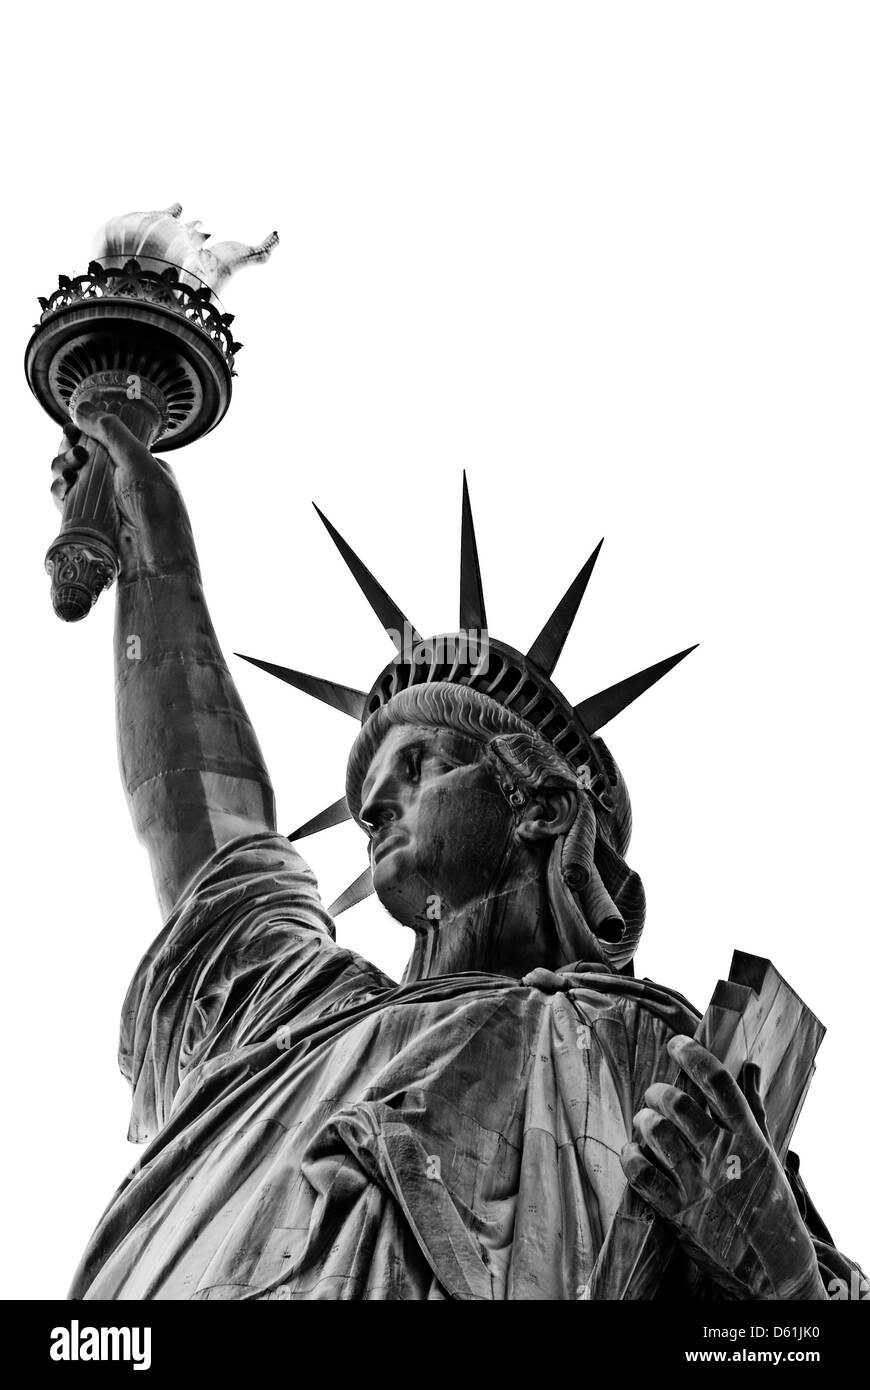 Freiheitsstatue, New York City, New York, Vereinigte Staaten von Amerika, USA - schwarz und weiß, isoliert auf weißem Hintergrund Stockfoto